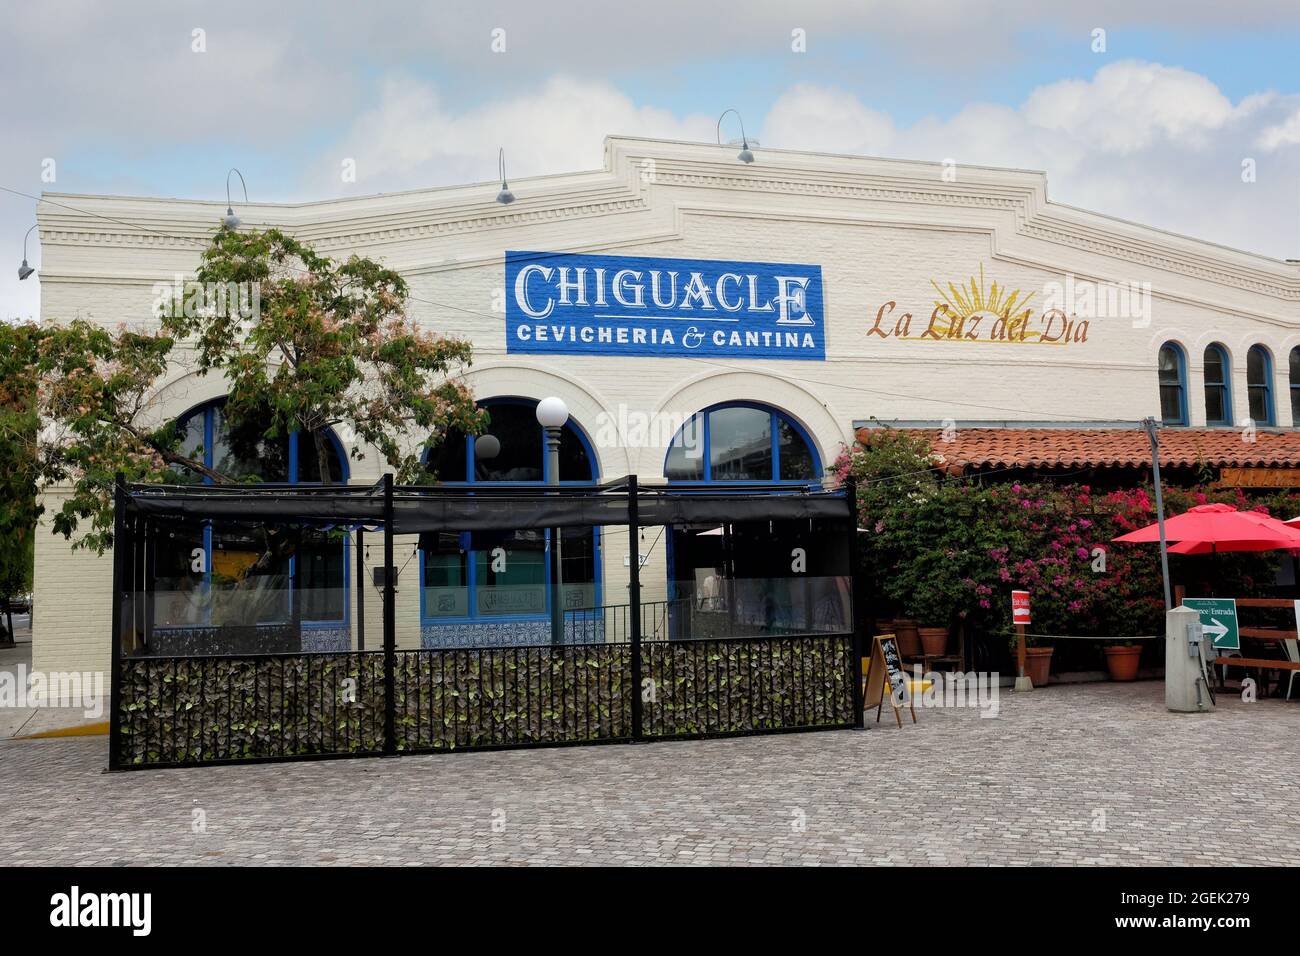 LOS ANGELES, KALIFORNIEN - 18. AUG 2021: Chiguacle Sabor Ancestral de Mexico in Los Angeles. Ein authentisches mexikanisches Restaurant im historischen Olvera Str. Stockfoto